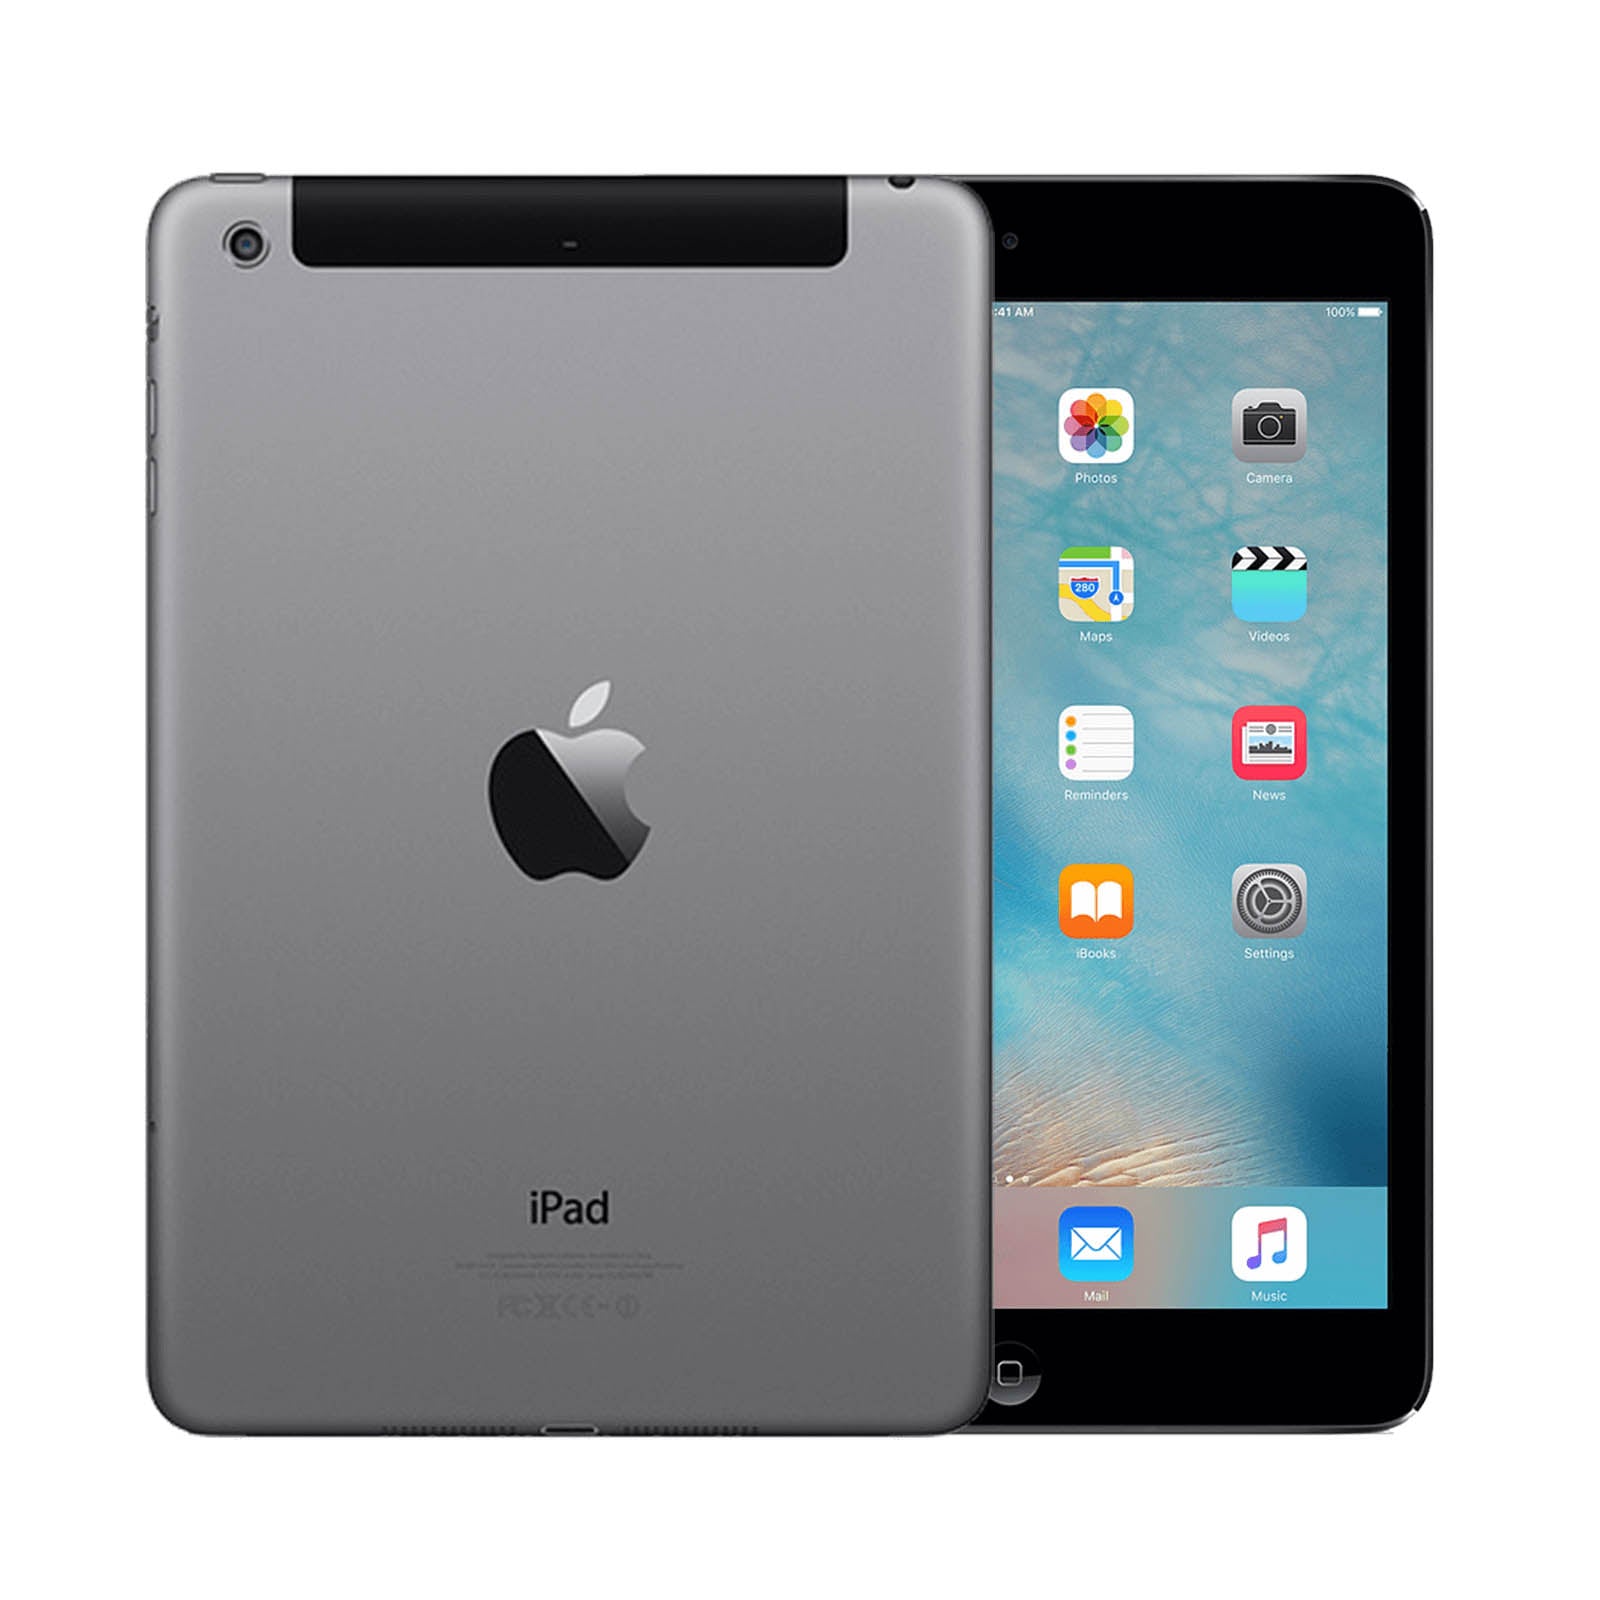 Apple iPad mini 2 16GB Black Good - Unlocked